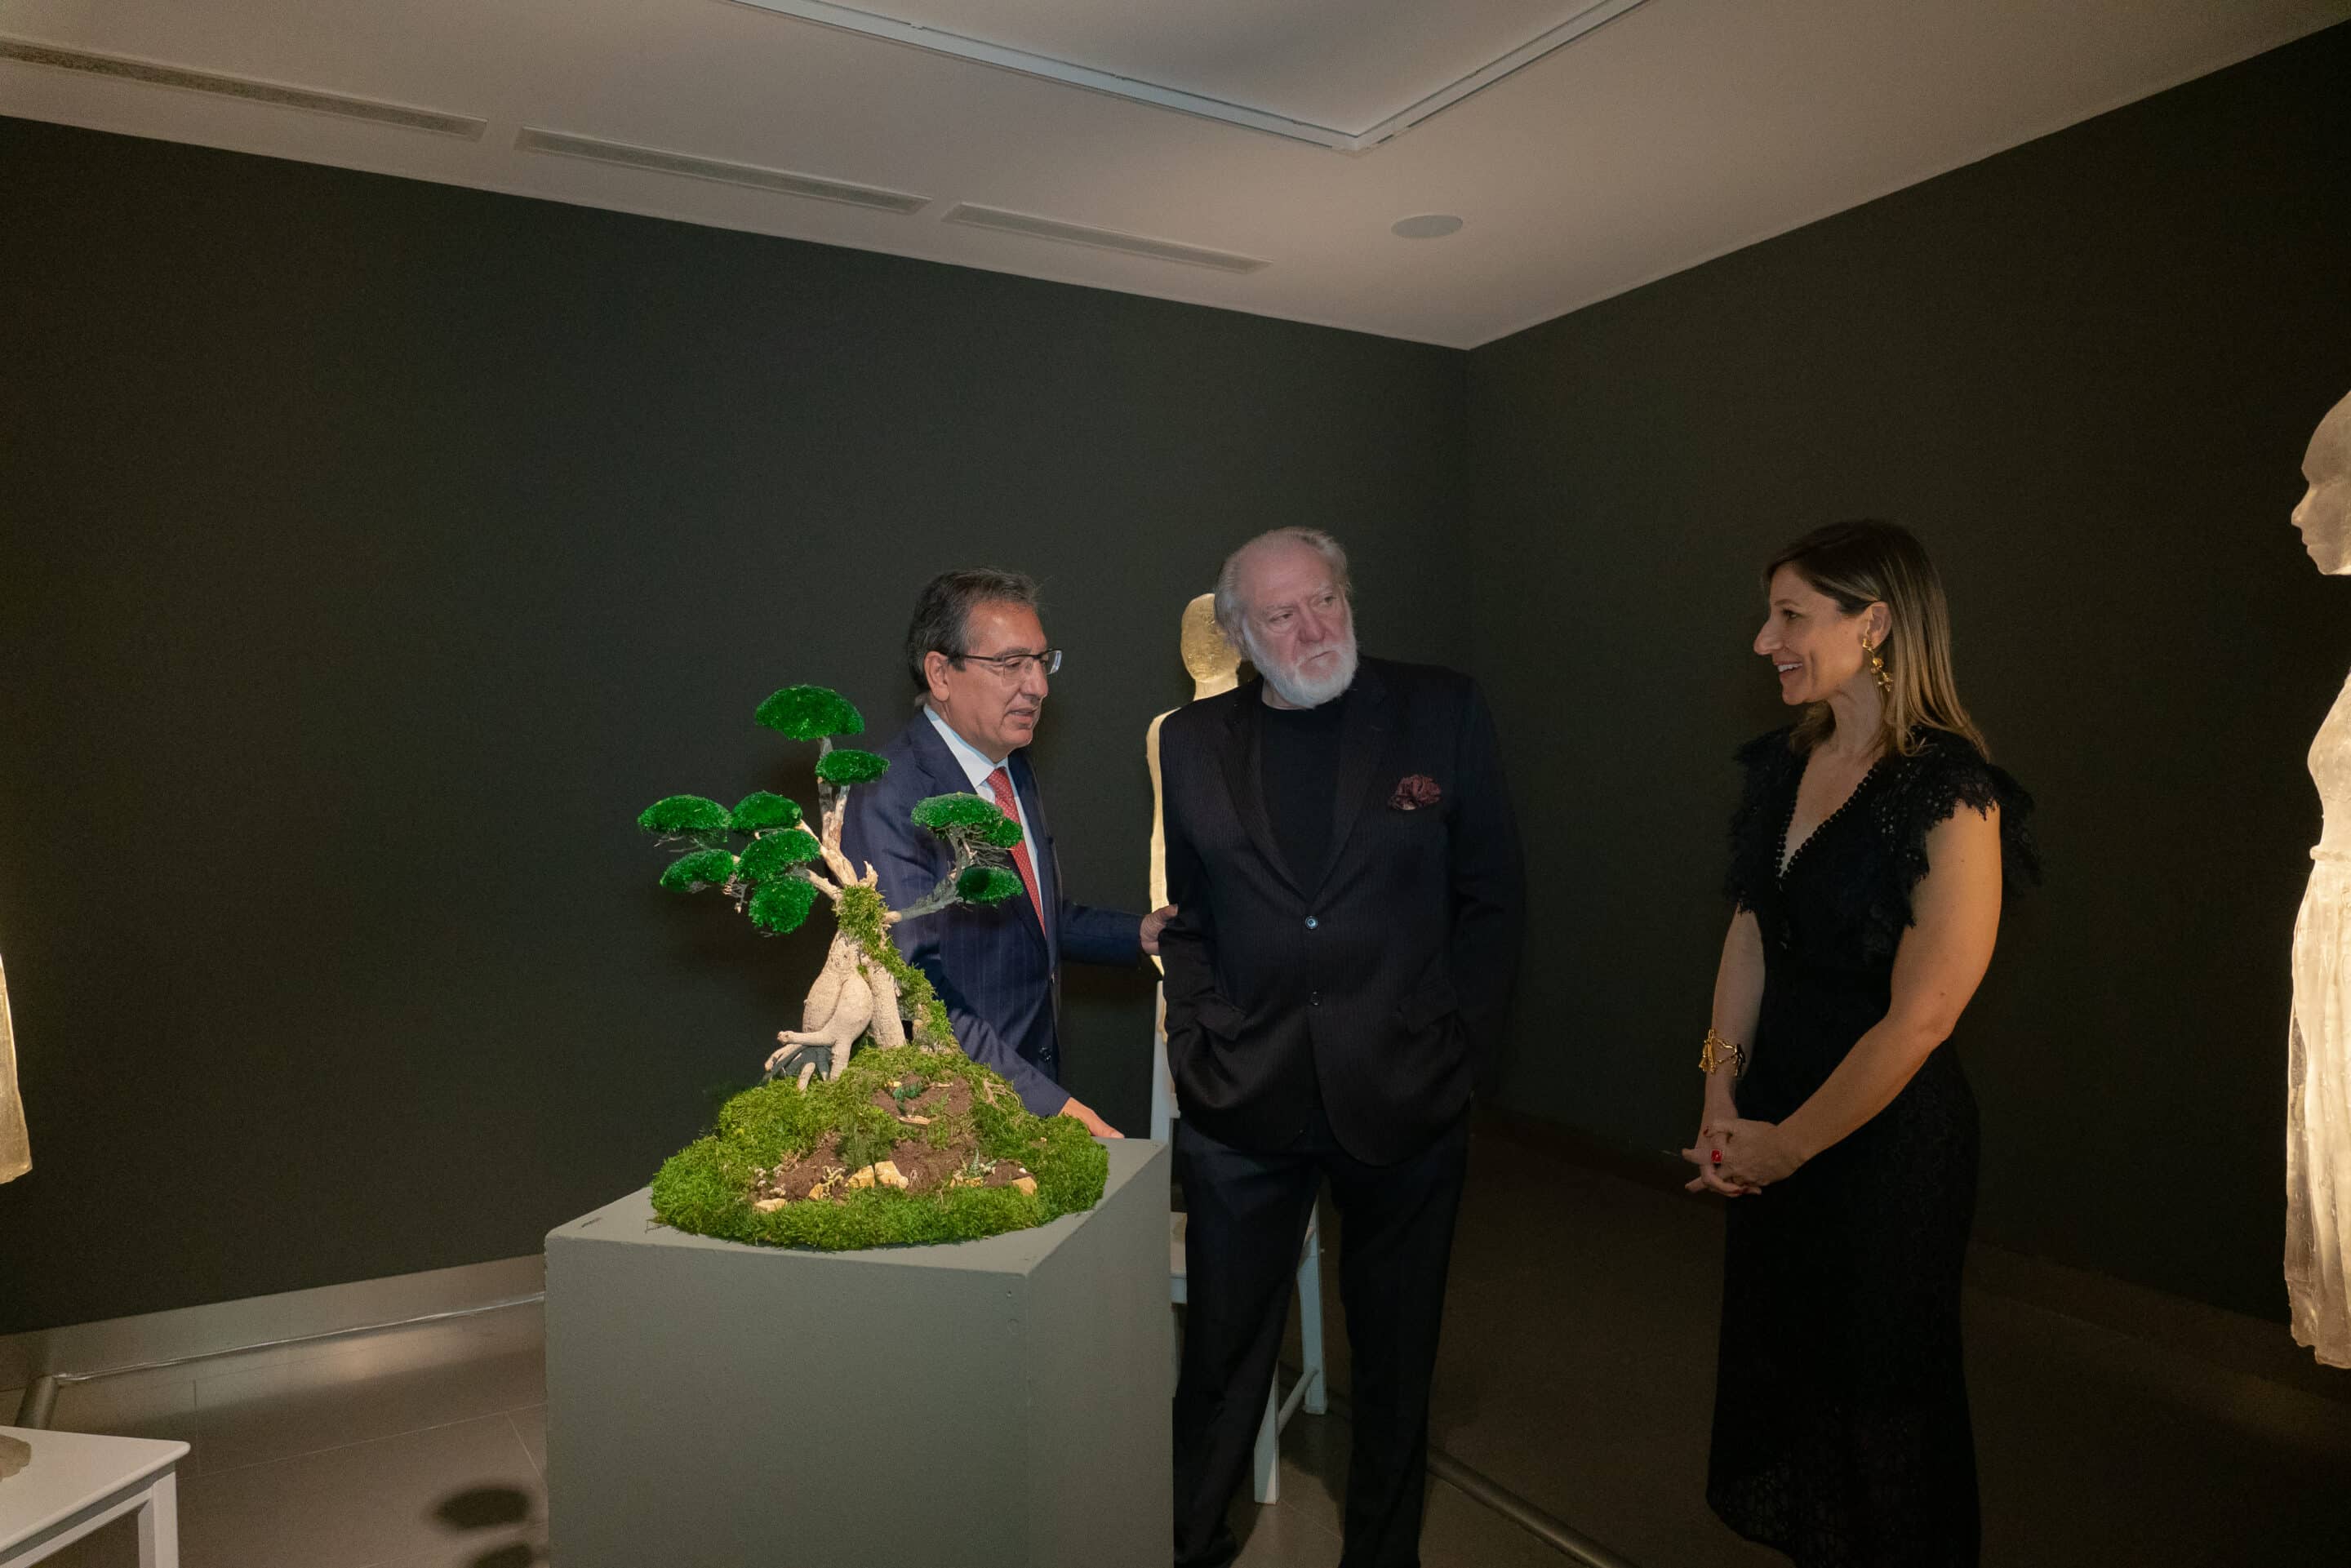 La Fundación Cajasol inaugura la exposición 'Epifanías', del artista argentino Eugenio Cuttica, en un acto con Antonio Pulido, Violeta Frank, Reyes Abad y el propio autor.